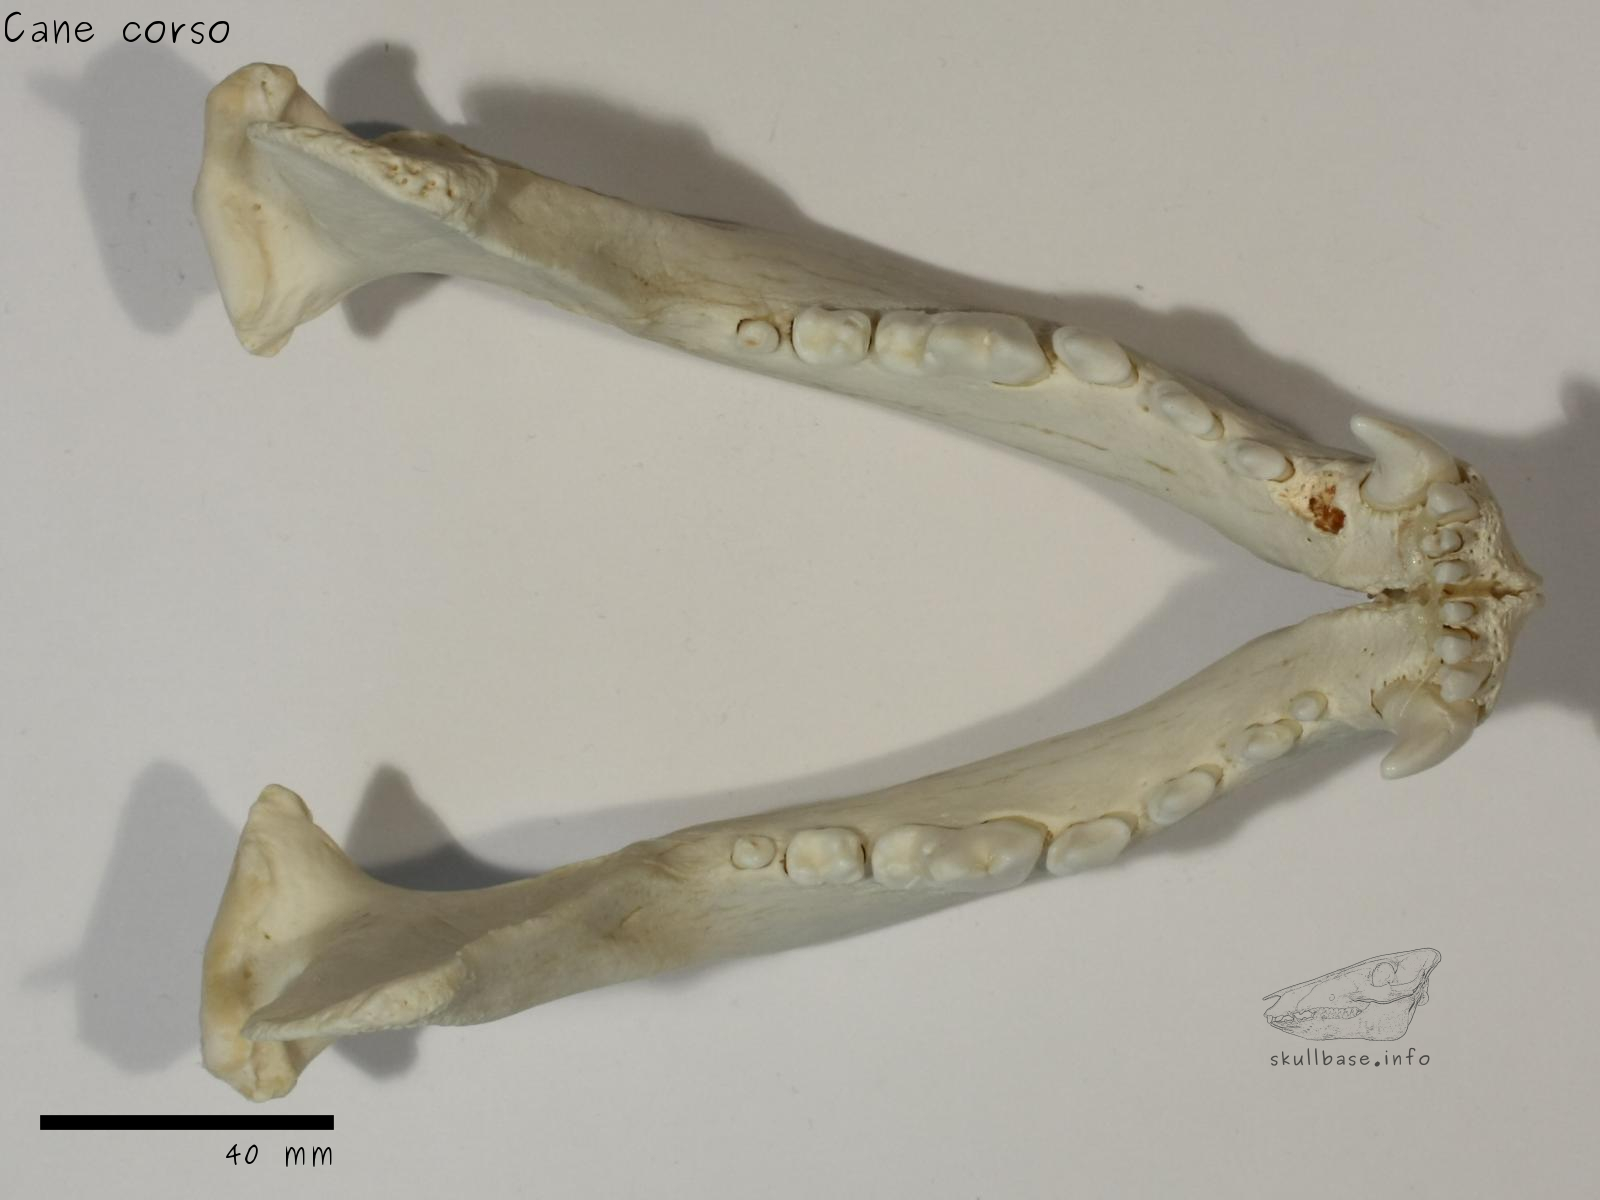 Cane corso (Canis lupus familiaris) jaw